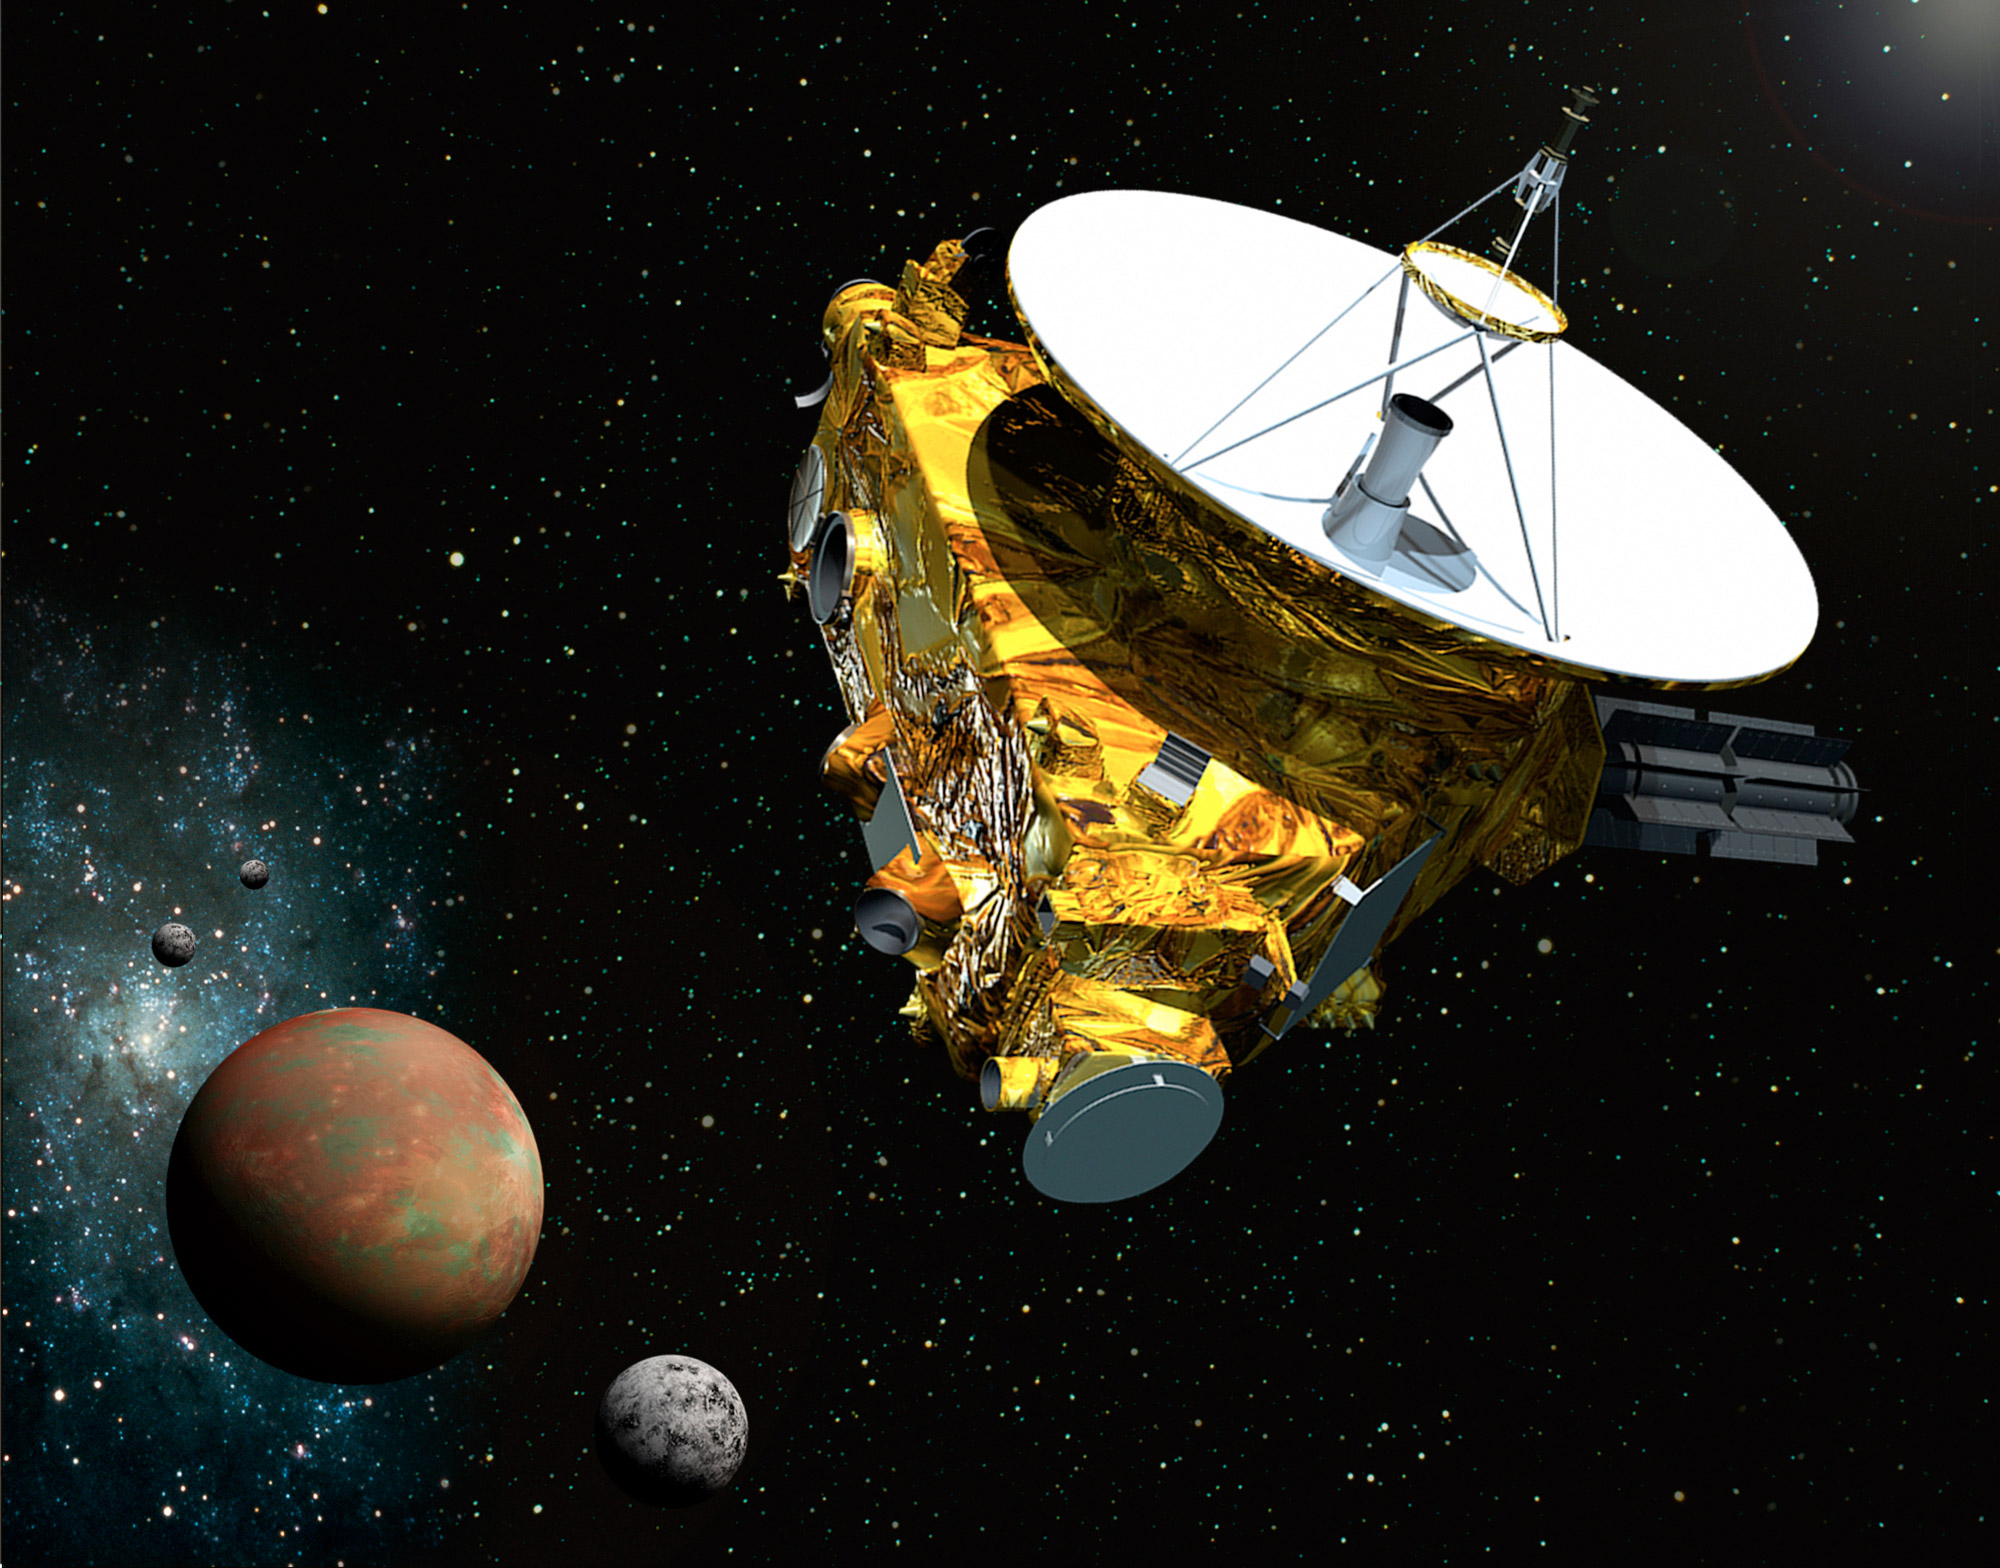 Lancée en janvier 2006, la sonde New Horizons sera le premier engin à rejoindre Pluton en juillet 2015. Elle a effectué un détour par Jupiter pour augmenter sa vitesse. © (JHUAPL, SwRI)